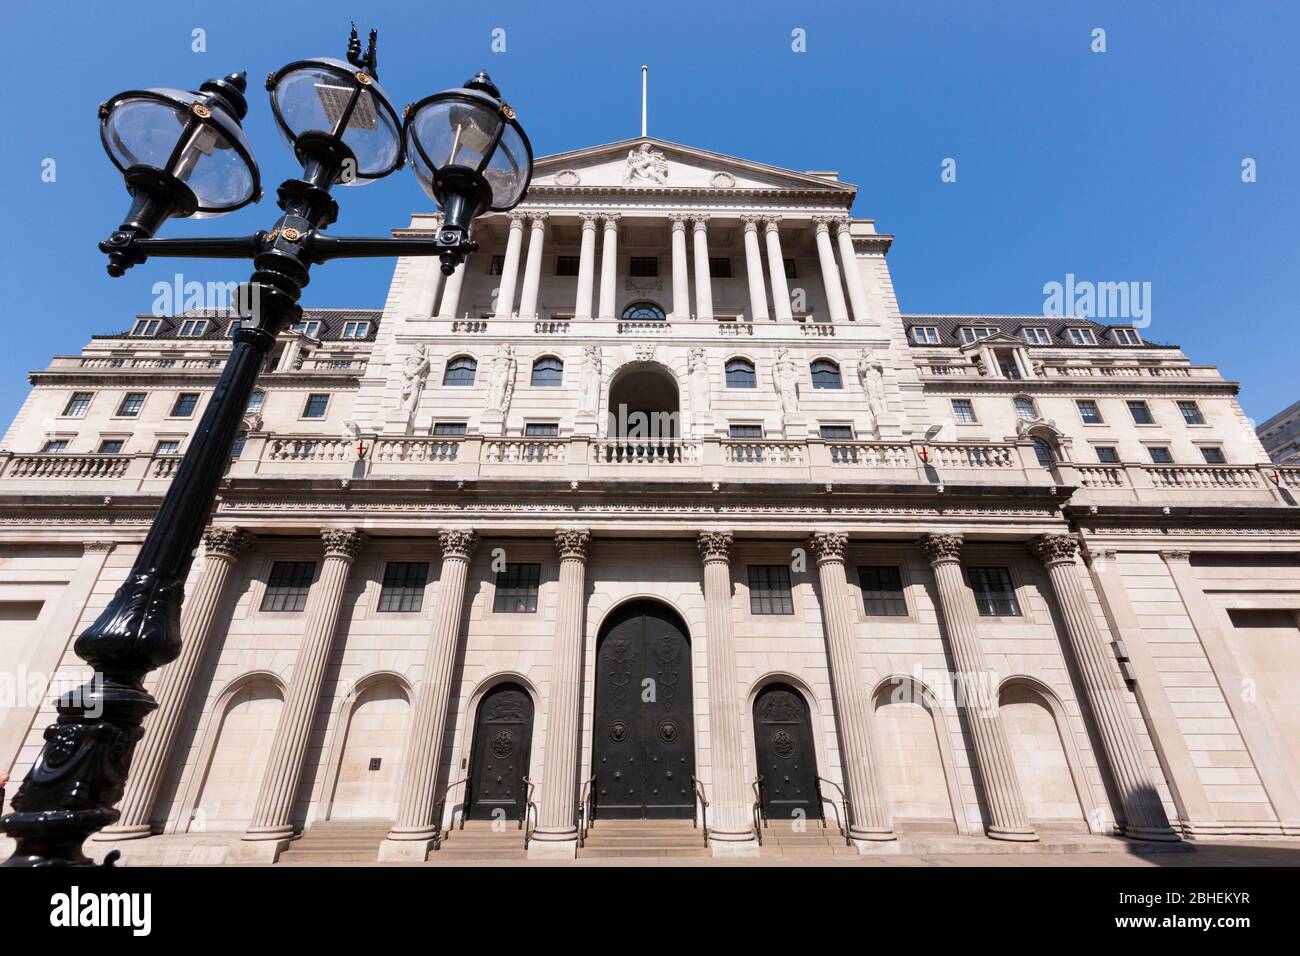 Fachada del edificio del Banco de Inglaterra en Threadneedle St, Londres, EC2R 8AH. El banco controla las tasas de interés para el Reino Unido. (118) Foto de stock